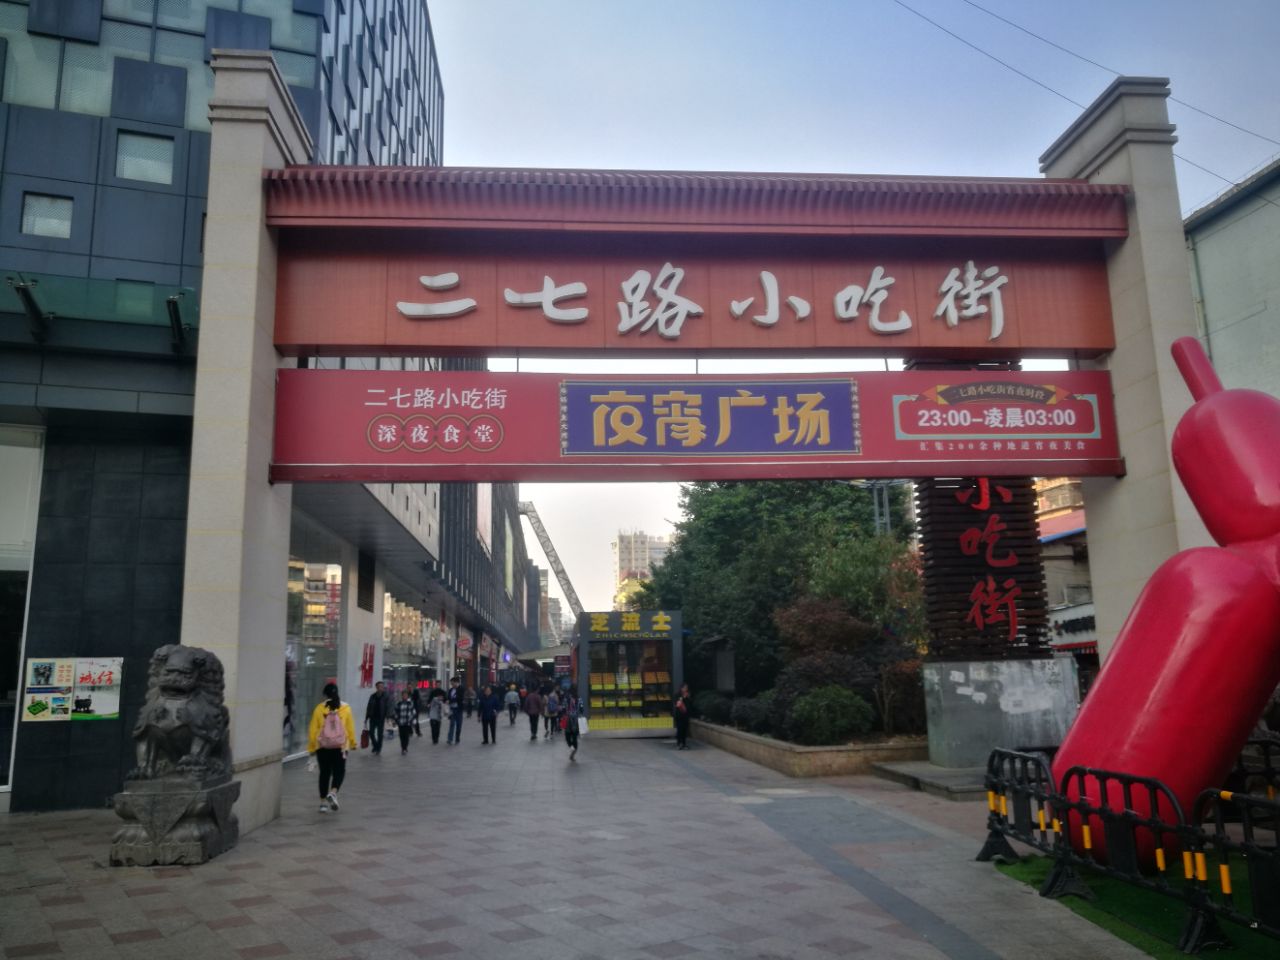 【携程攻略】郑州二七广场景点,地铁建完之后这里终于恢复了。不过喧闹的广场 来回的天桥围着二七纪…